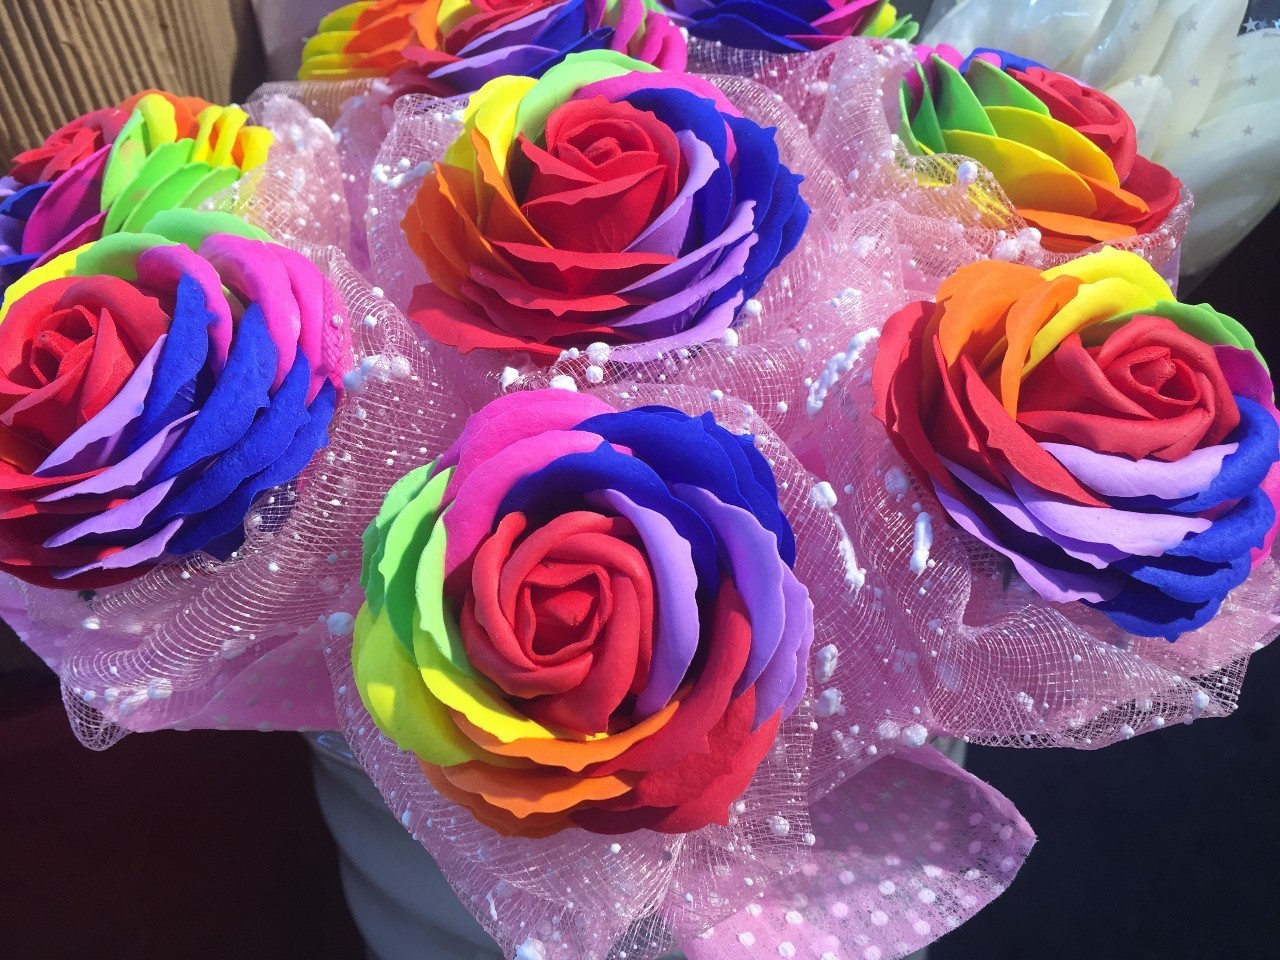 这种染成不颜色的玫瑰 在市场里属于稀有品种 叫"七彩玫瑰" 产地荷兰